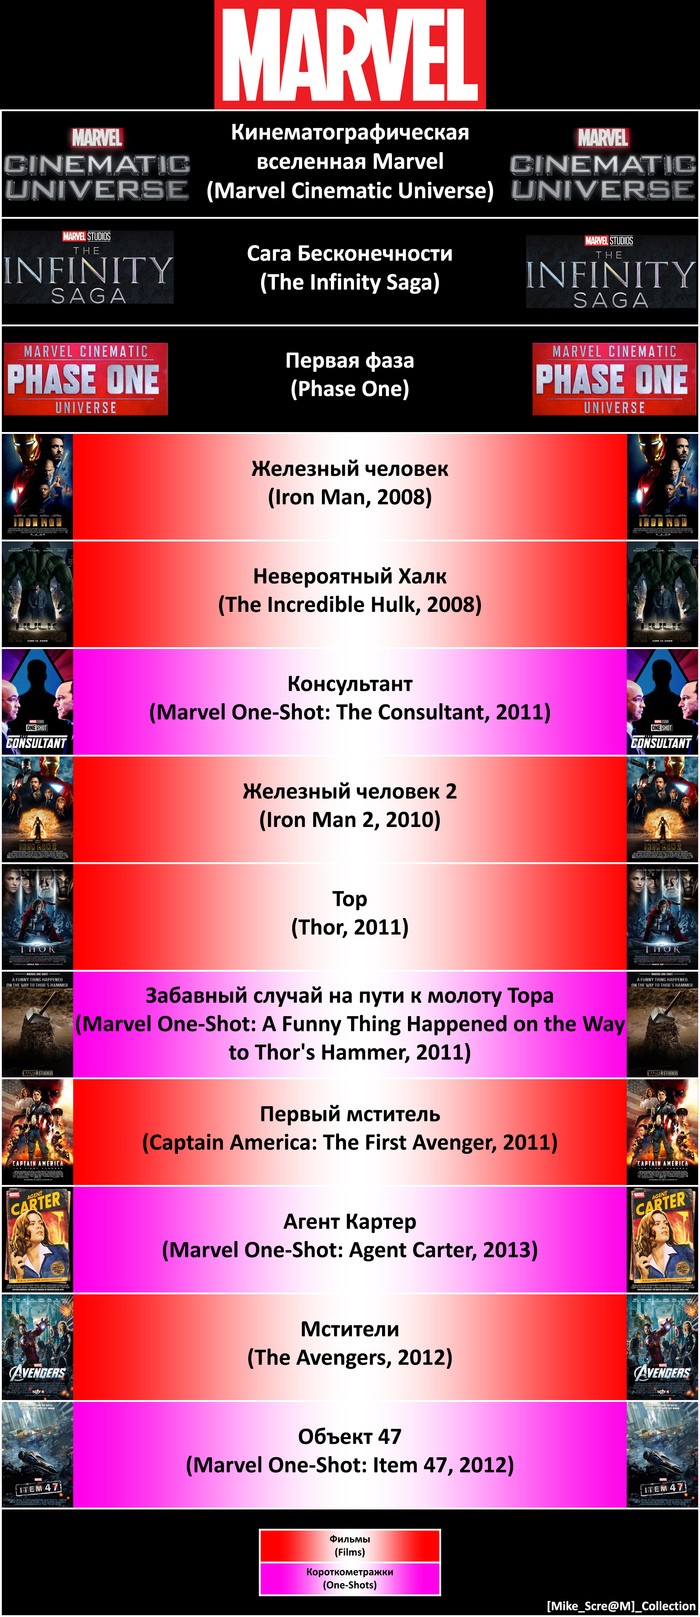 Киновселенная Mavel, первая фаза Marvel, Киновселенная Marvel, Длиннопост